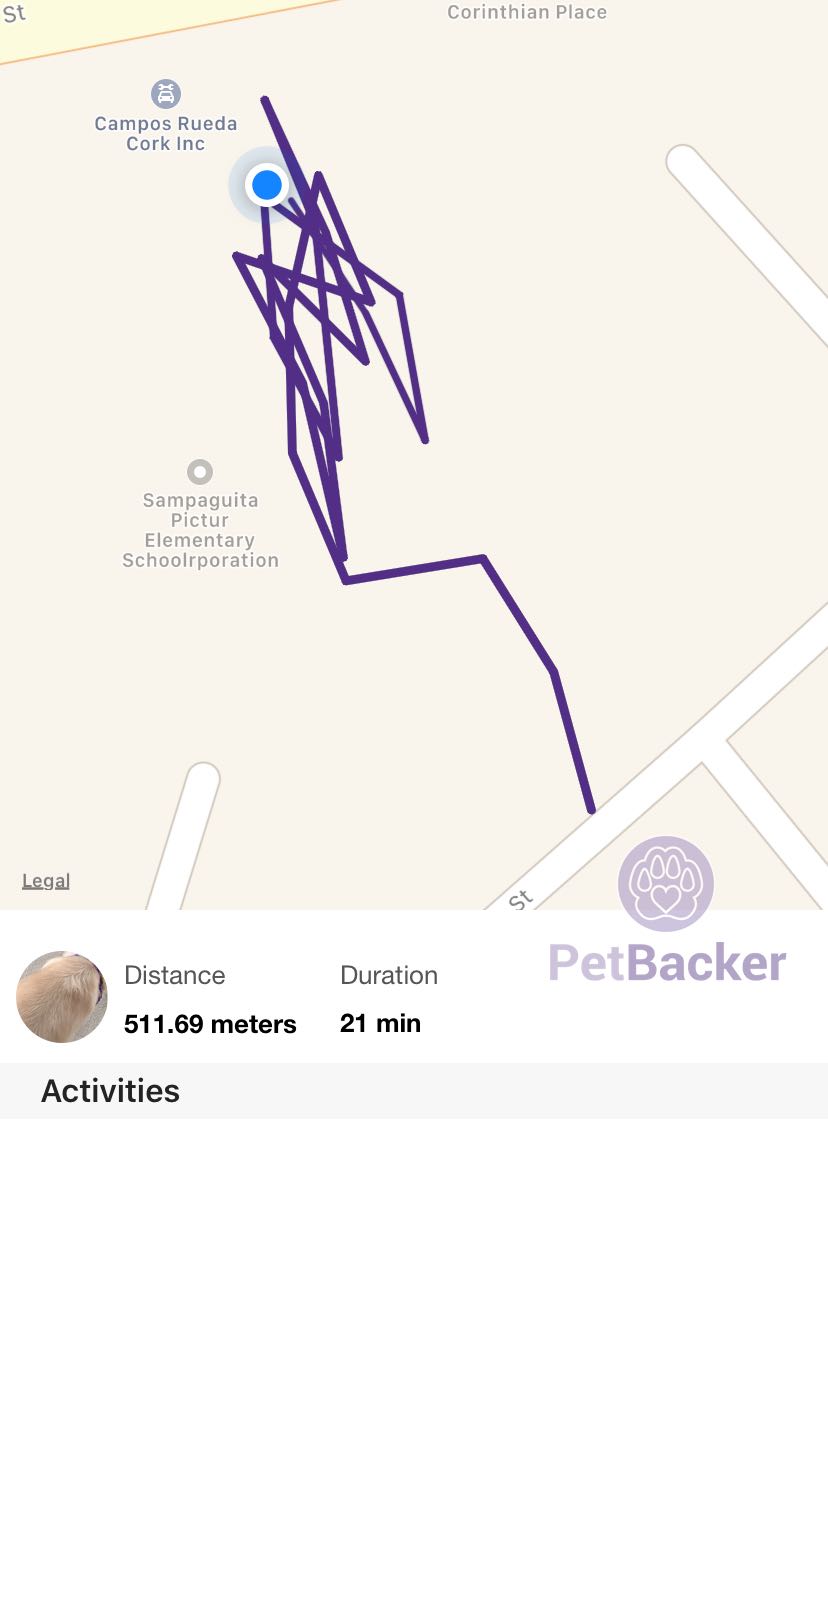 Just completed pet walking of 511.69 meters